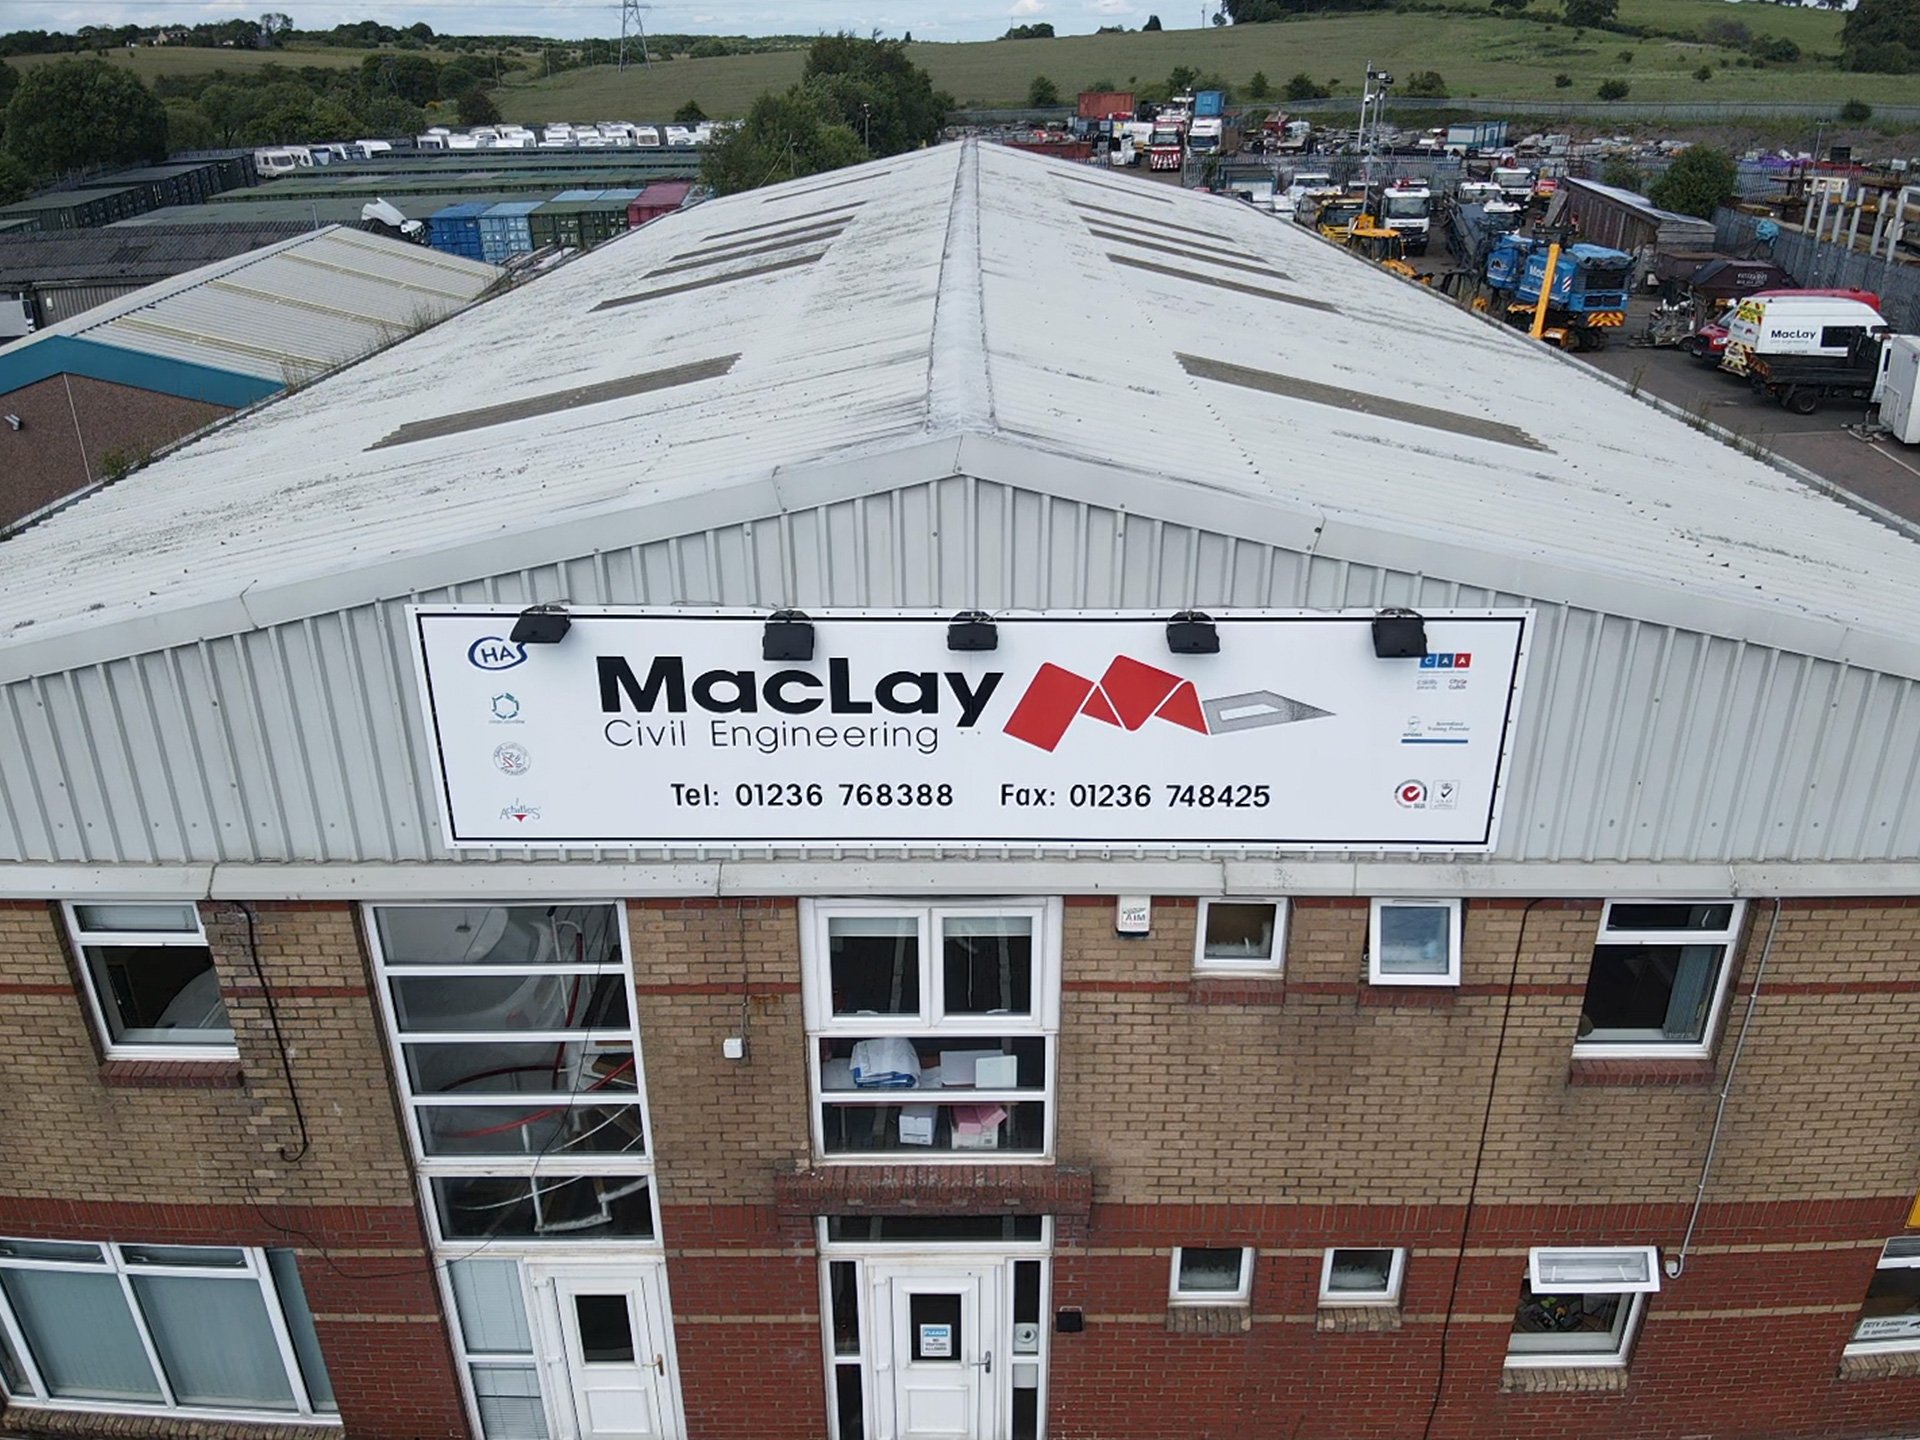 Maclay Civil Engineering slide 1 main office